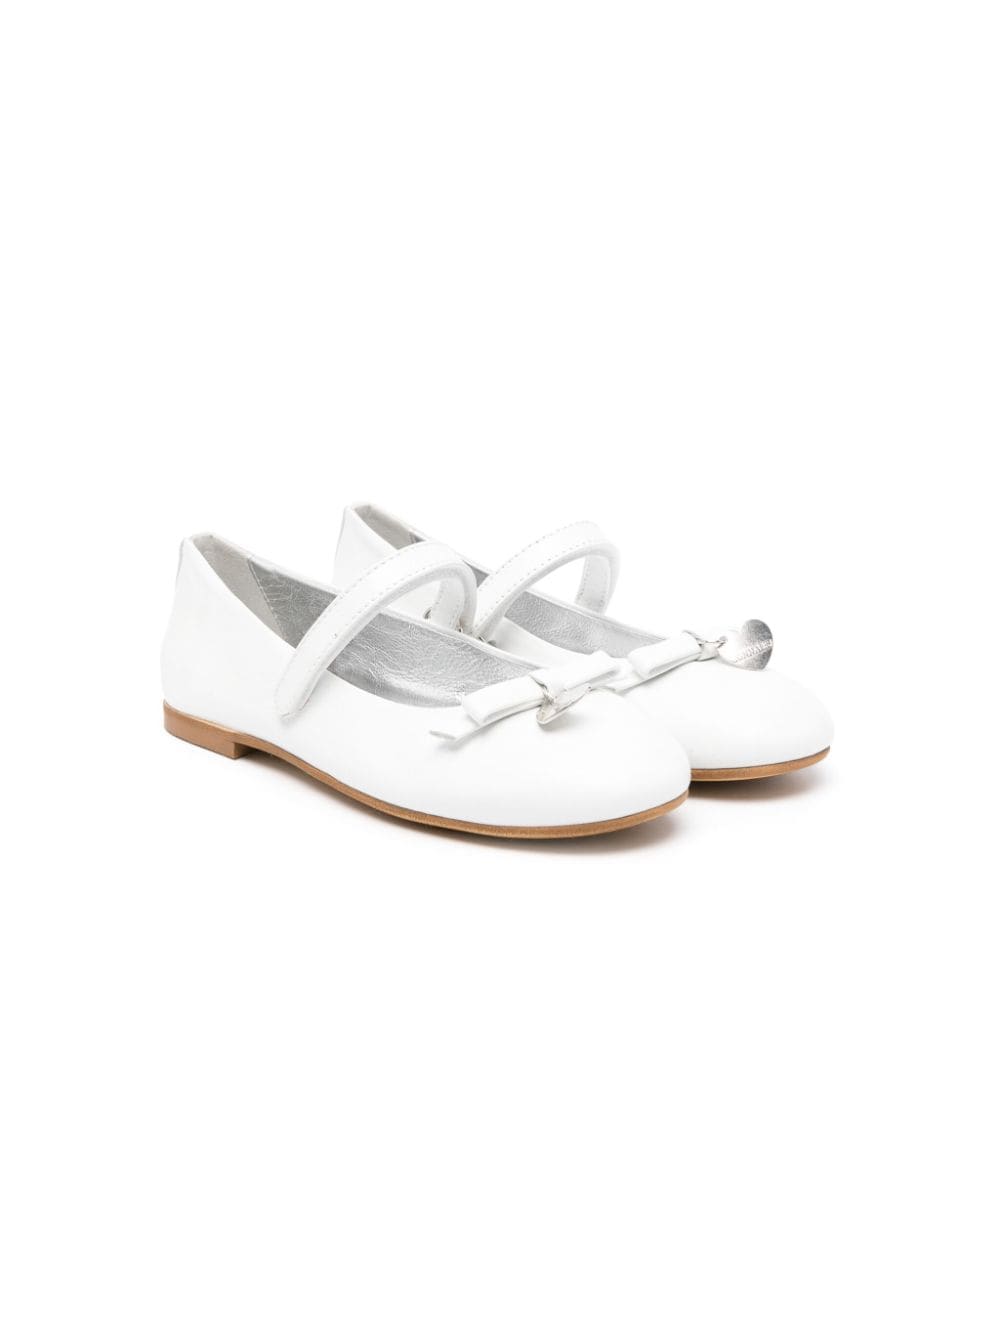 Monnalisa bow leather ballerina shoes - White von Monnalisa